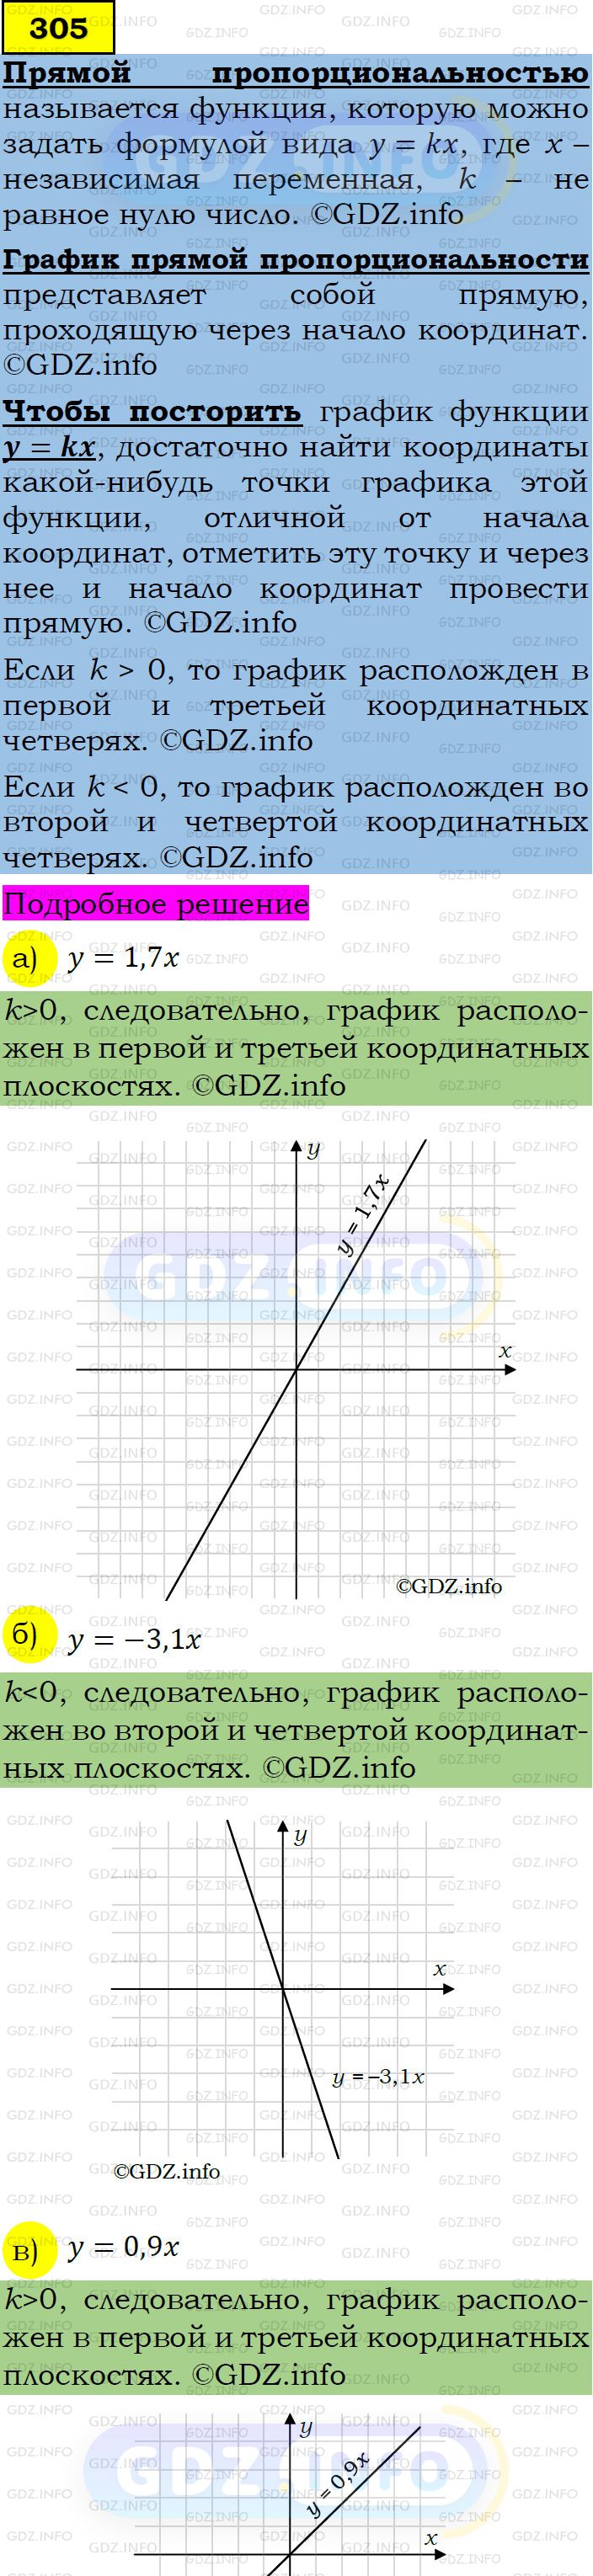 Фото подробного решения: Номер задания №305 из ГДЗ по Алгебре 7 класс: Макарычев Ю.Н.